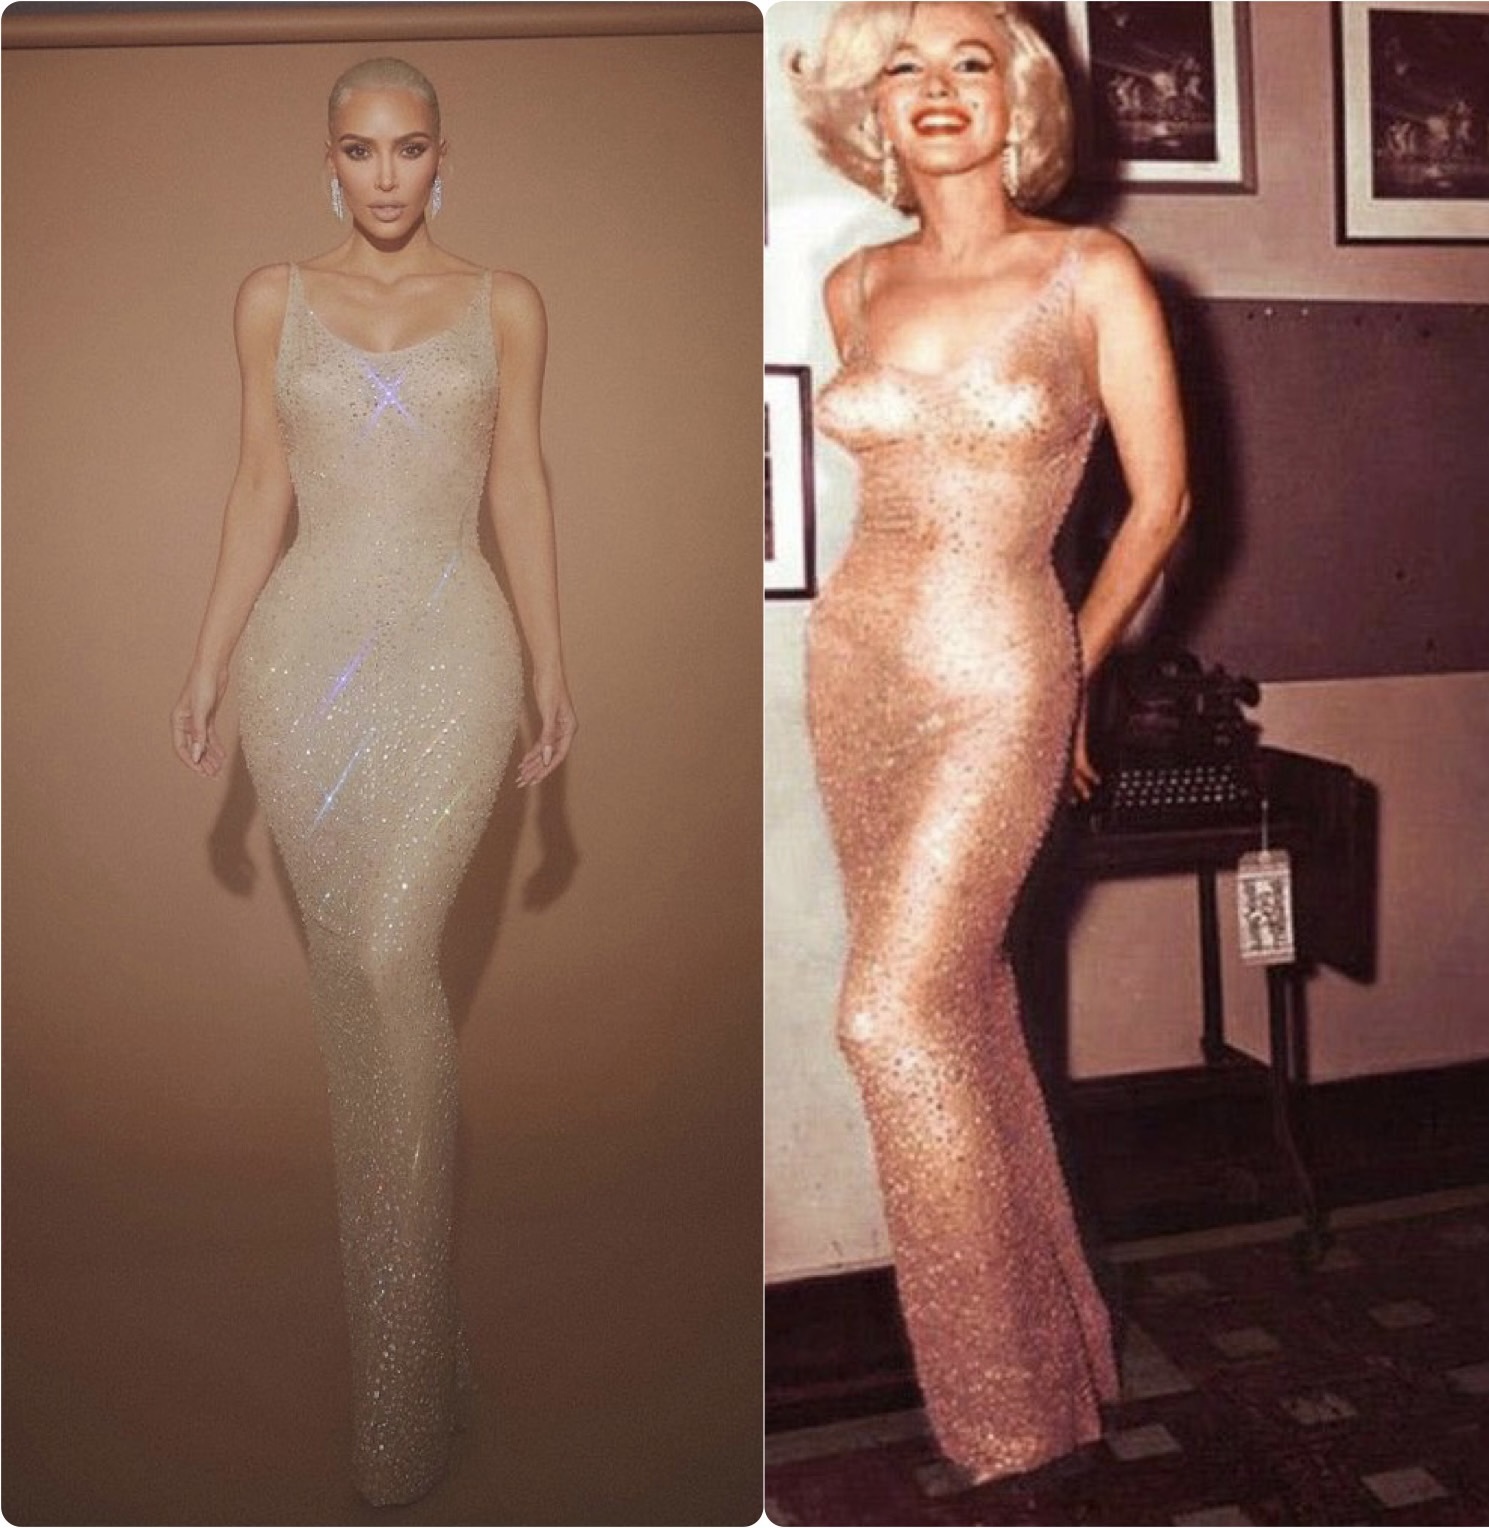 Kim Kardashian adelgazó 7 kilos para meterse en el vestido de Marilyn Monroe  via @laviejaguardiaa